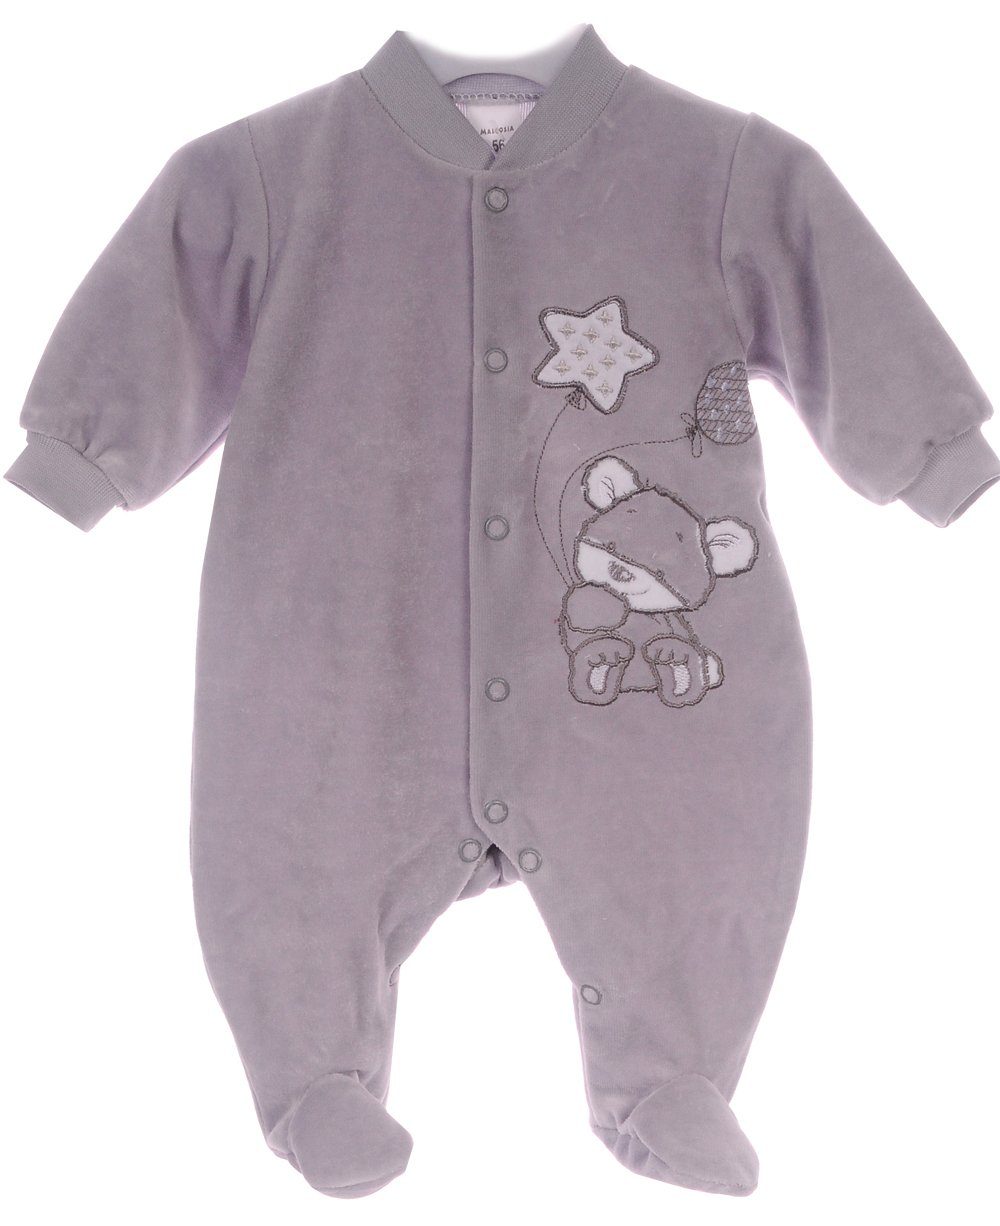 Kinder Jungen (Gr. 50 - 92) La Bortini Strampler Strampler Overall Baby Anzug Schlafanzug Einteiler 46 50 56 62 68